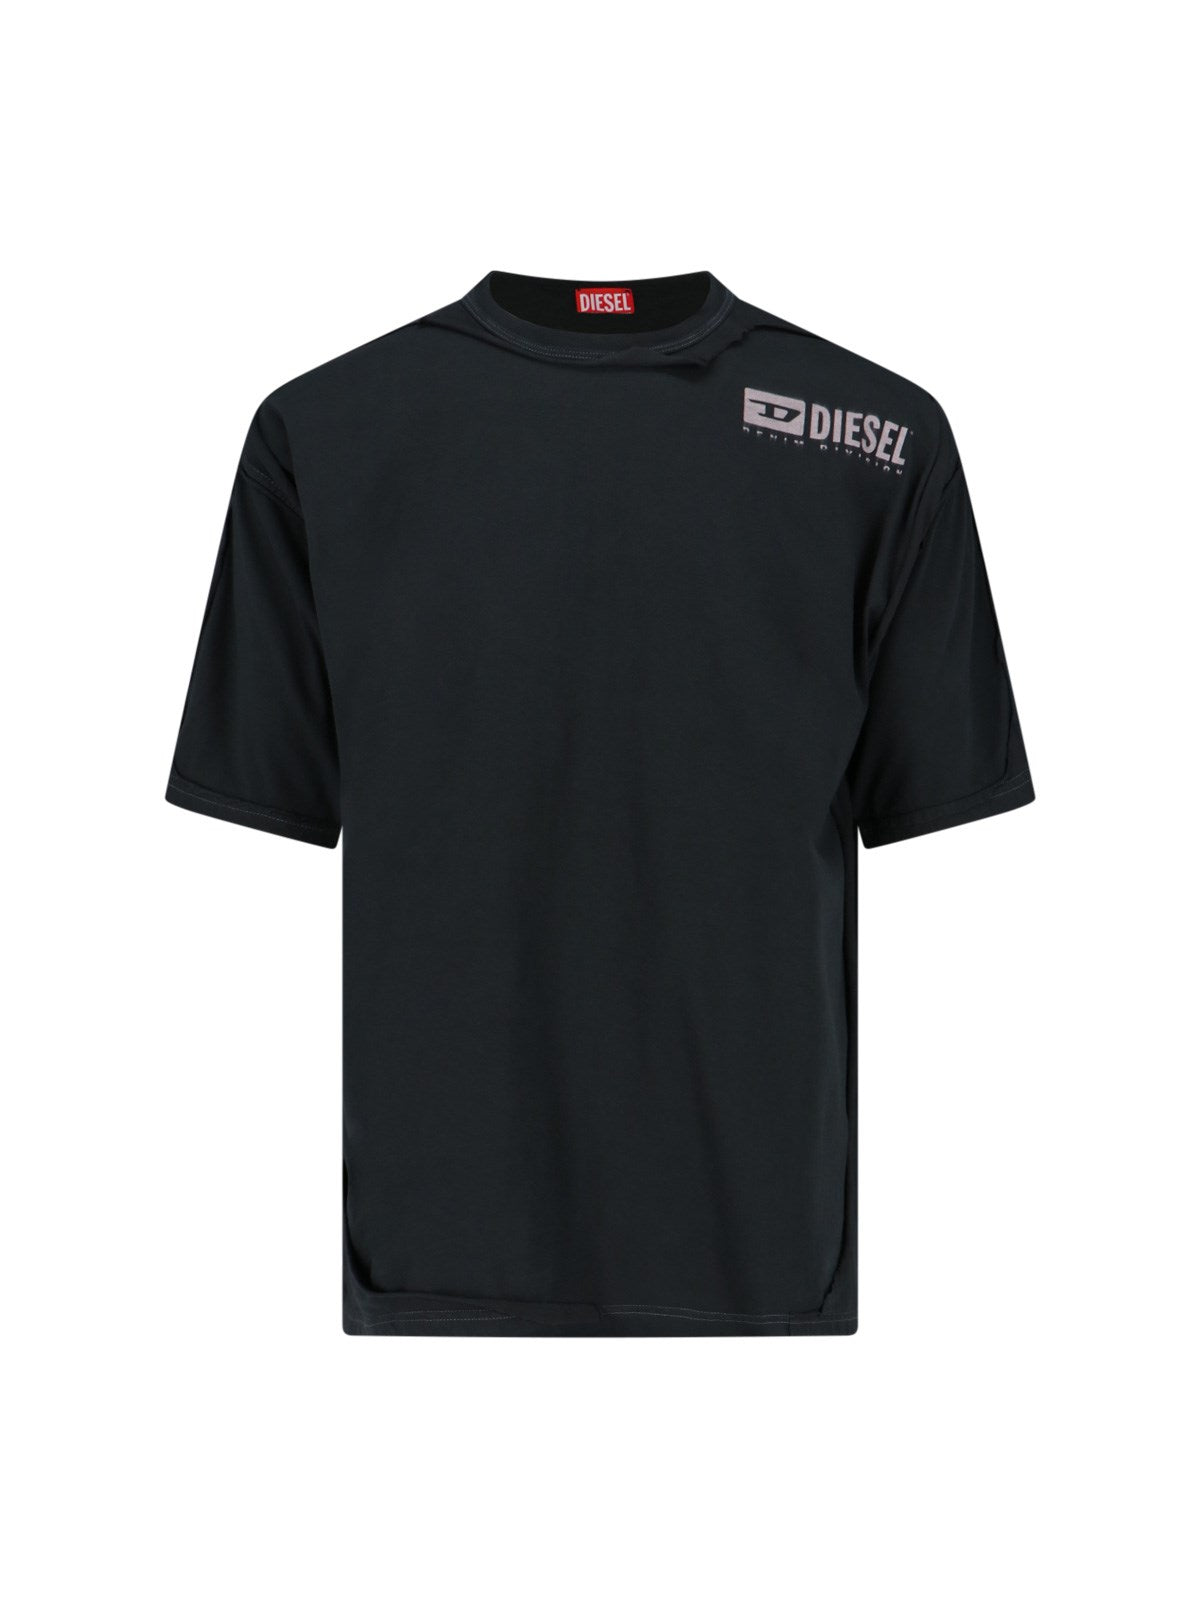 Diesel T-Shirt "t-box-dbl"-t-shirt-Diesel-T-shirt "t-box-dbl" Diesel, in cotone nero, girocollo, maniche corte, dettagli destroyed, stampa logo grigio fronte, orlo dritto.-Dresso